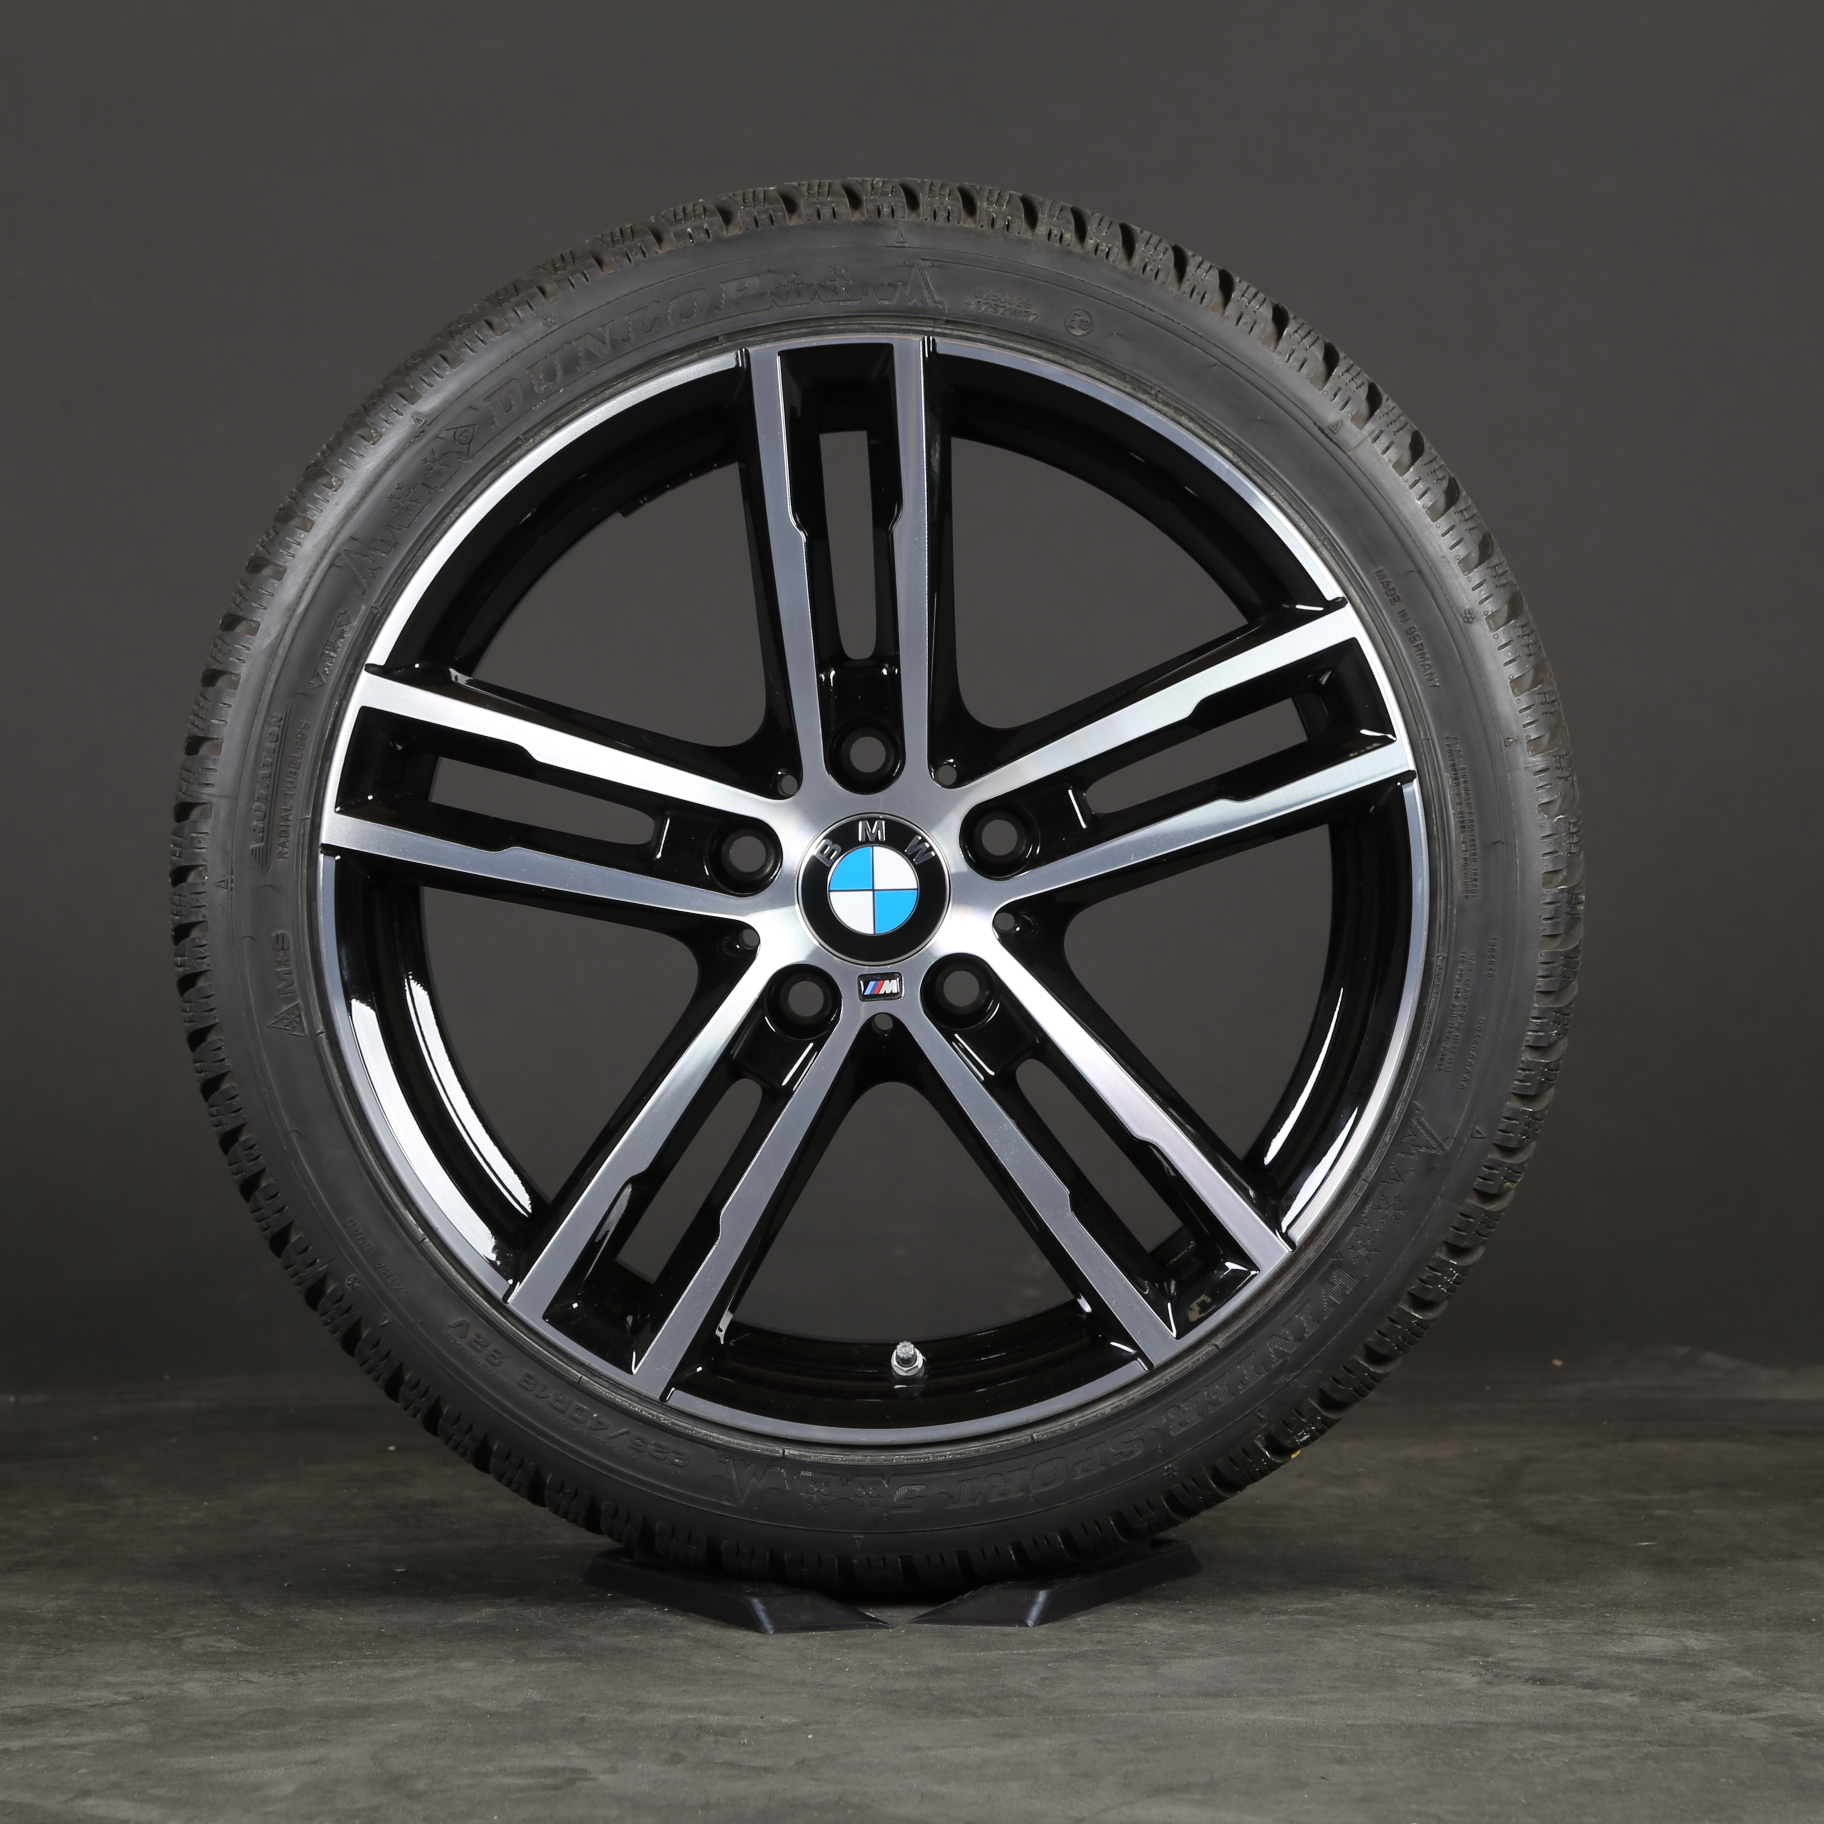 BMW Série 1 F20 F21 Série 2 F22 F23 originale 18 pouces roues d'hiver 8009701 M719 Jantes